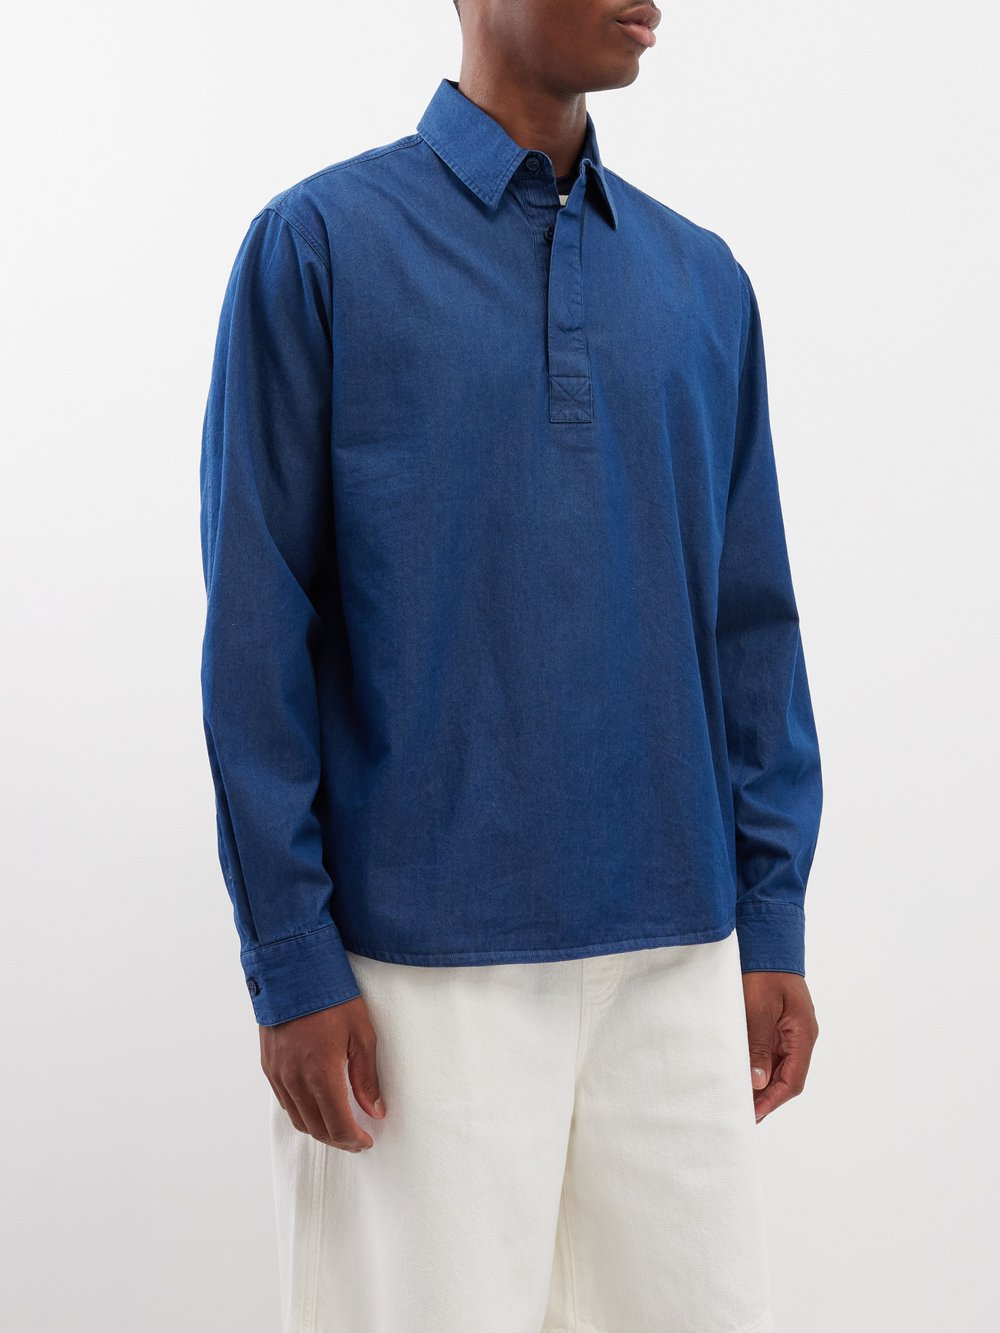 Джинсовая рубашка для регби shanklin Orlebar Brown, синий фото